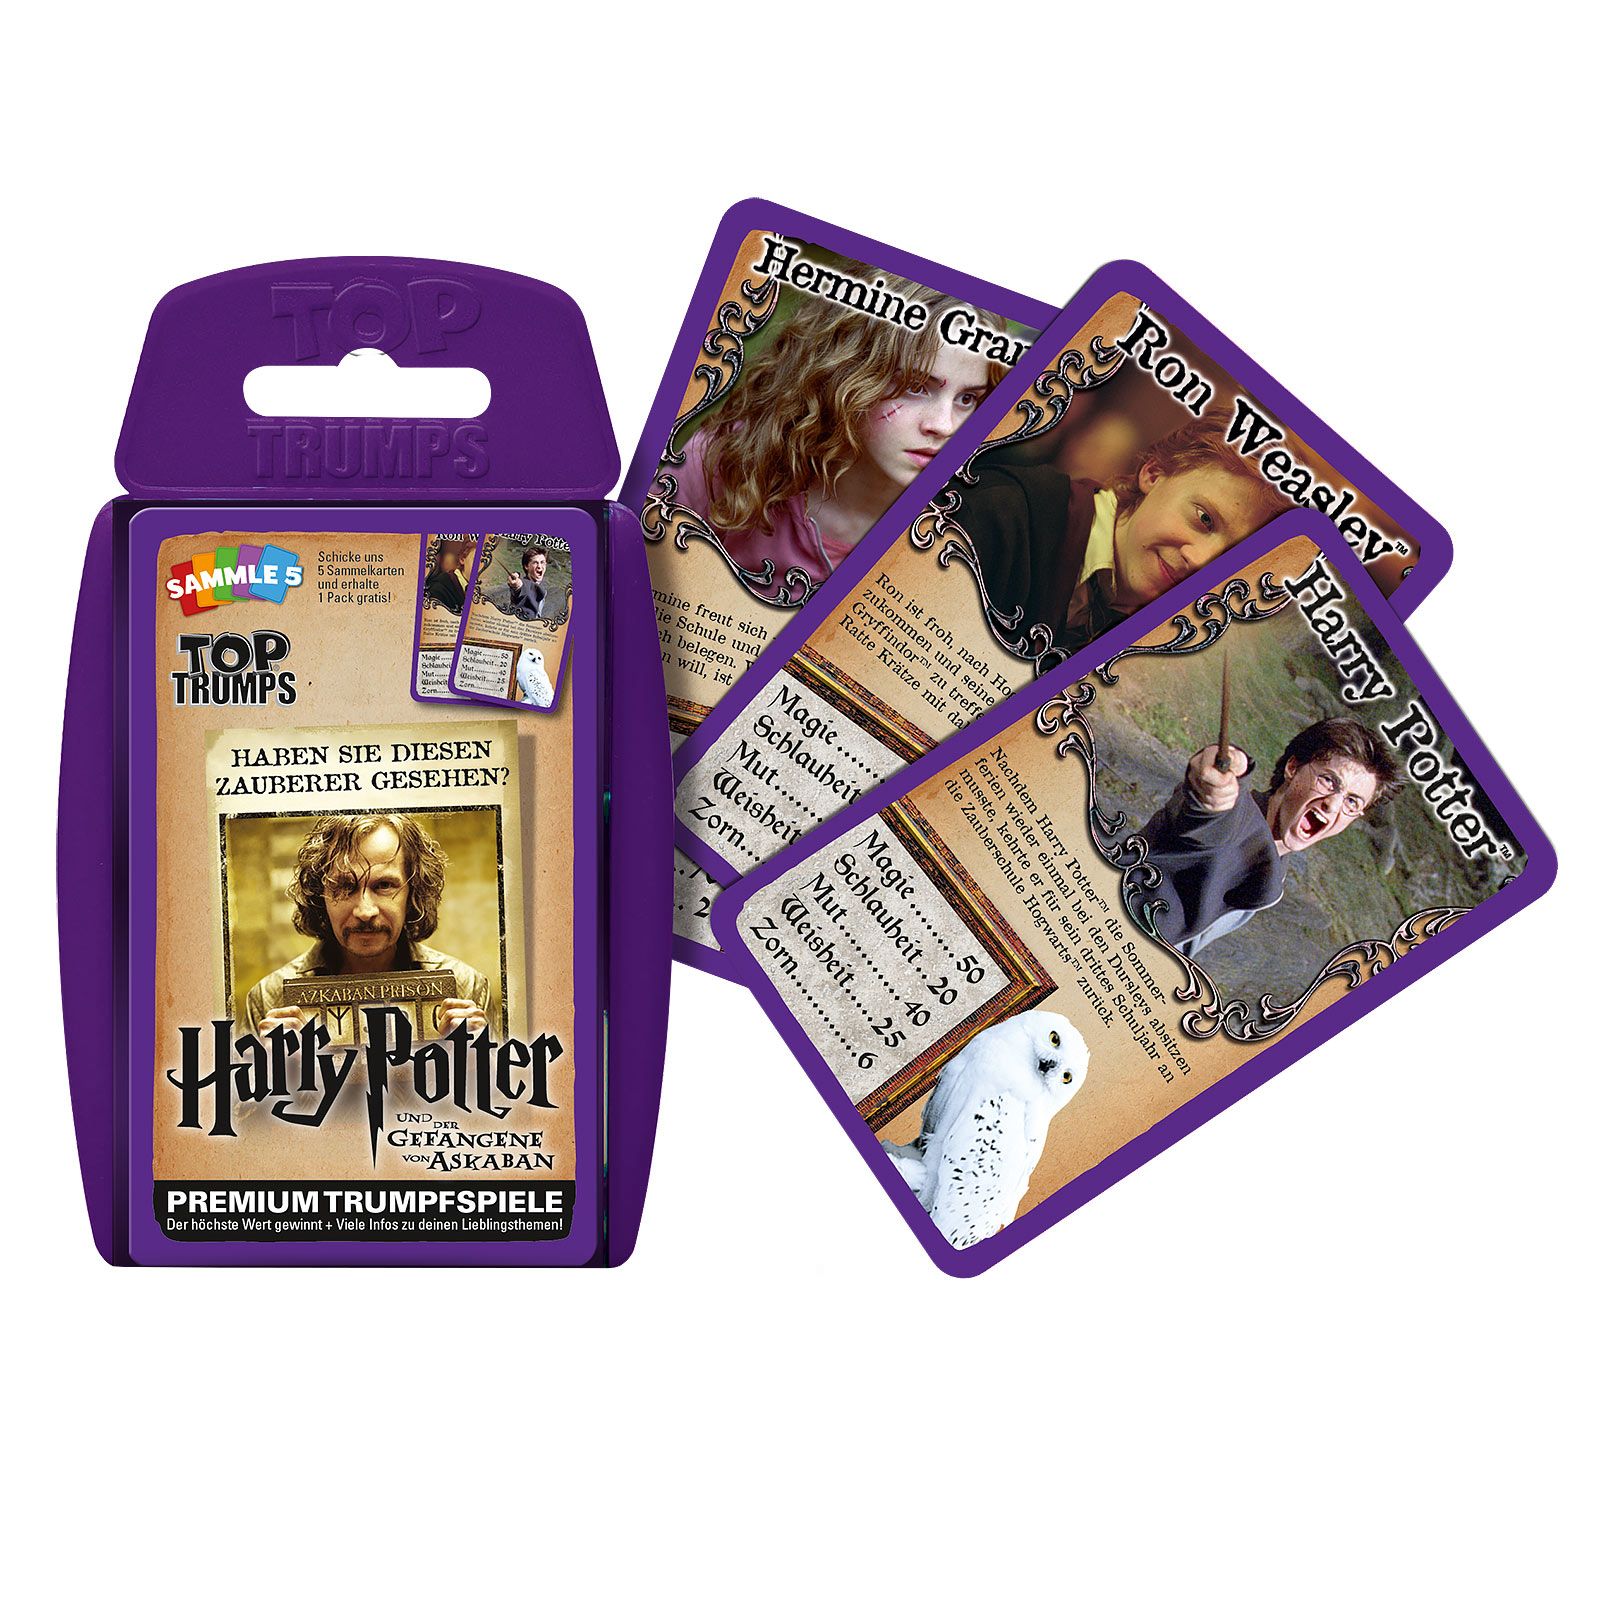 Harry Potter et le Prisonnier d'Azkaban Top Trumps Cartes à jouer